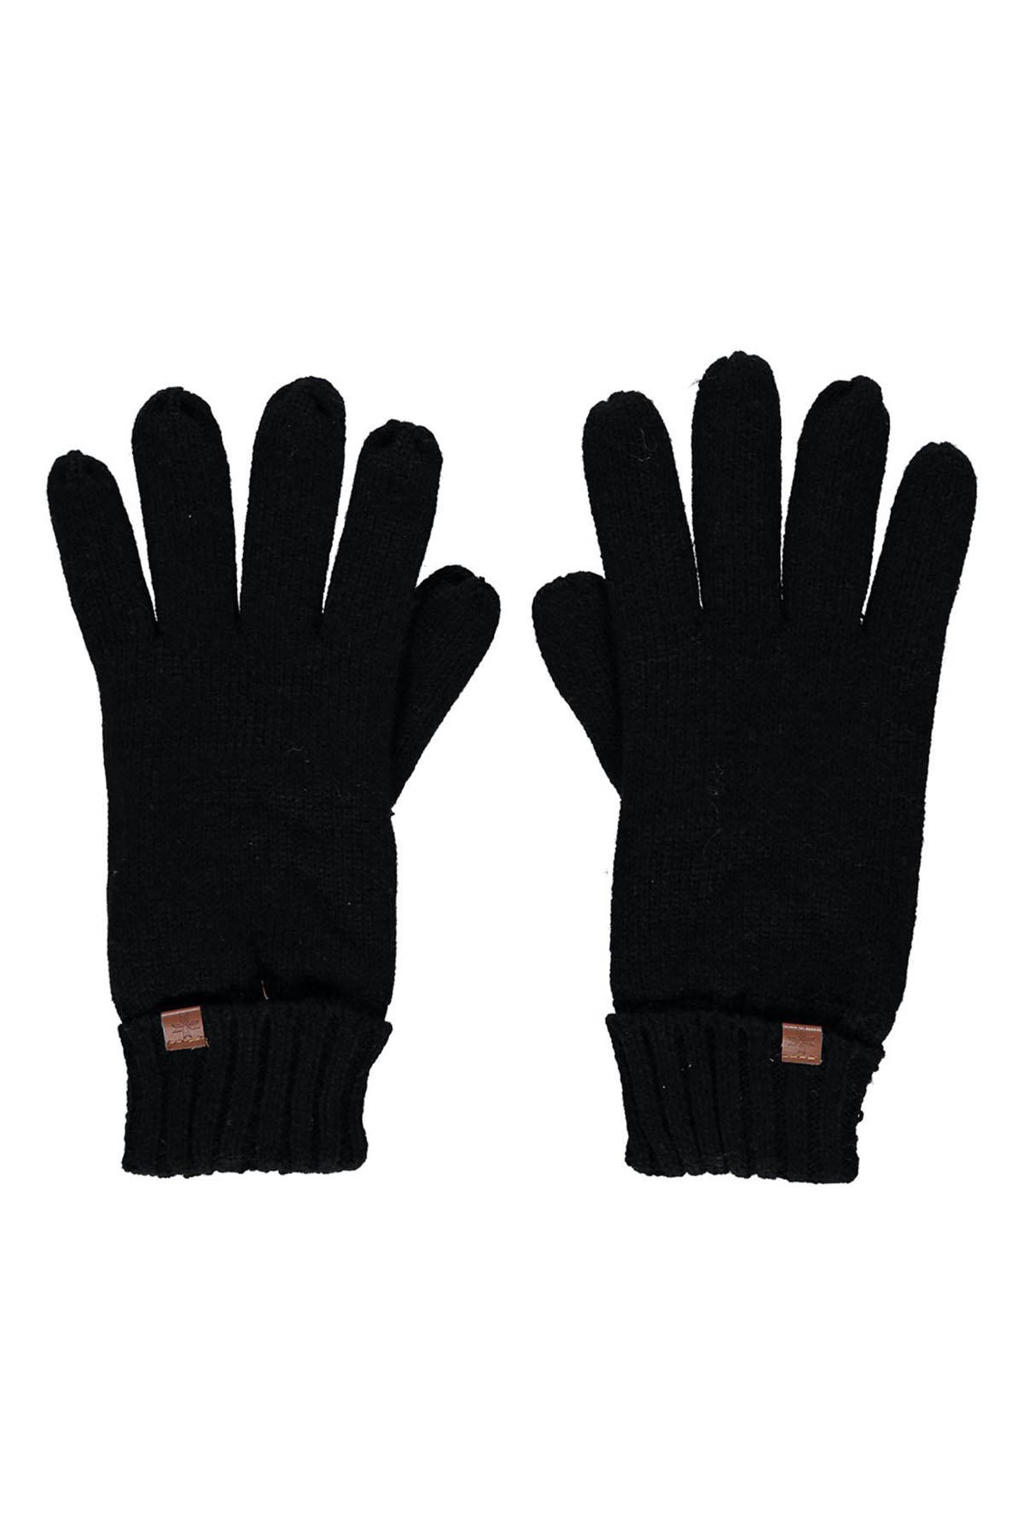 Sarlini handschoenen zwart